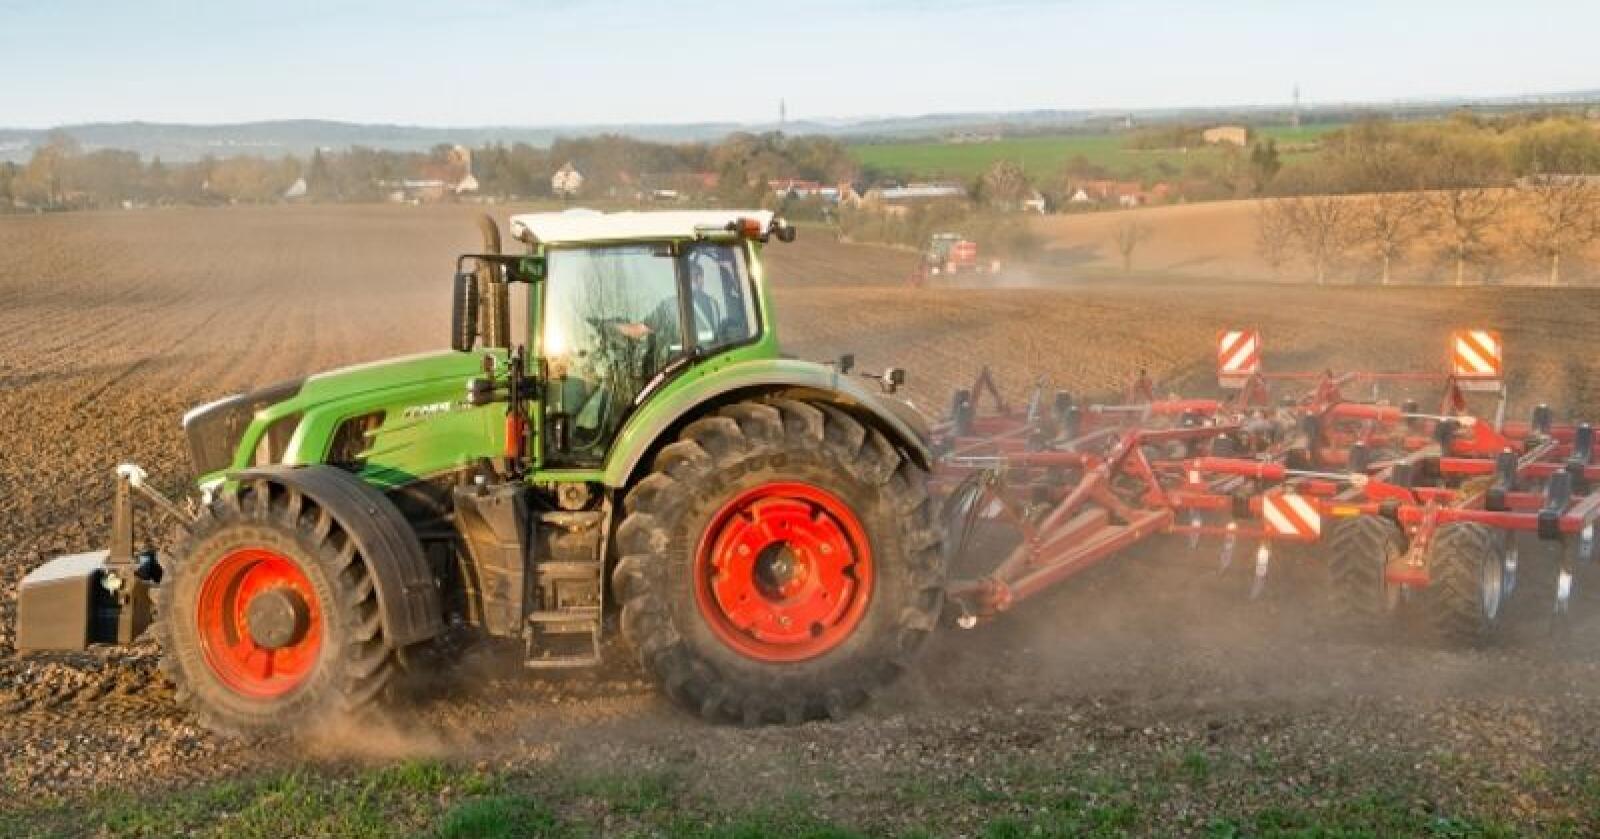 Både Fendt og John Deere vil presentere splitter nye traktormodeller for allmennheten under Agritechnica i november. (Foto: produsenten)